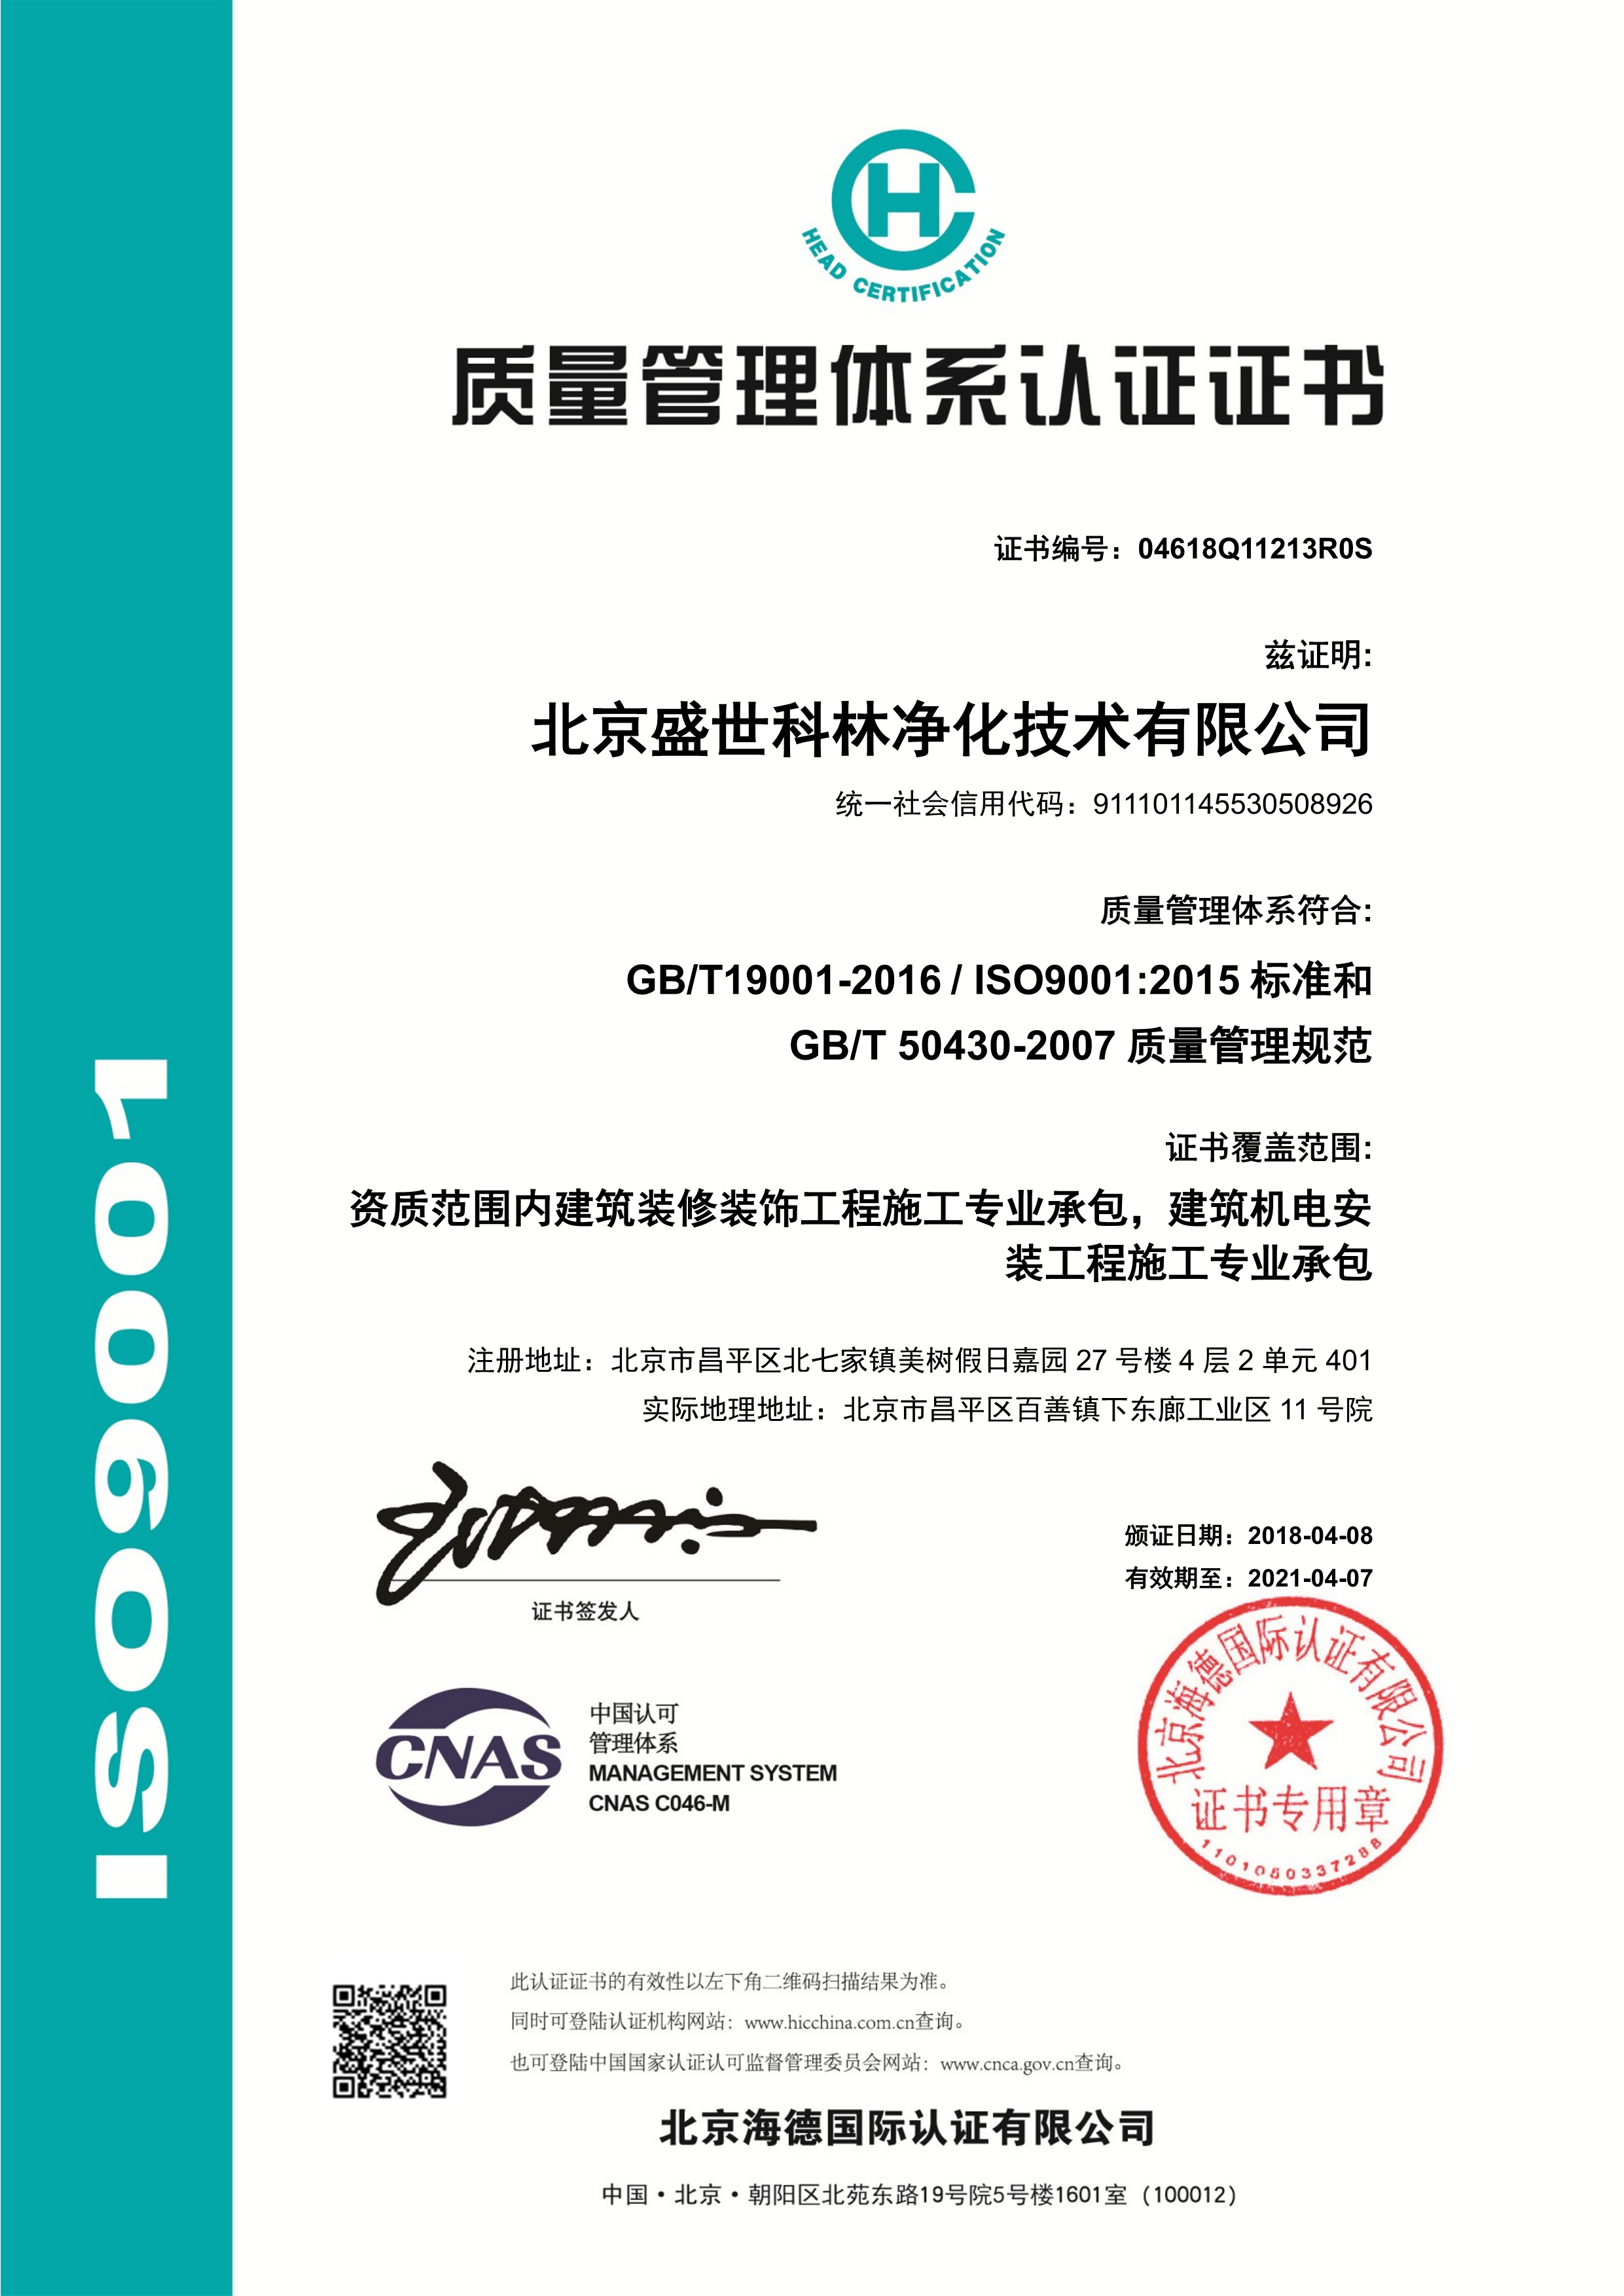 IOS9001质量认证中文